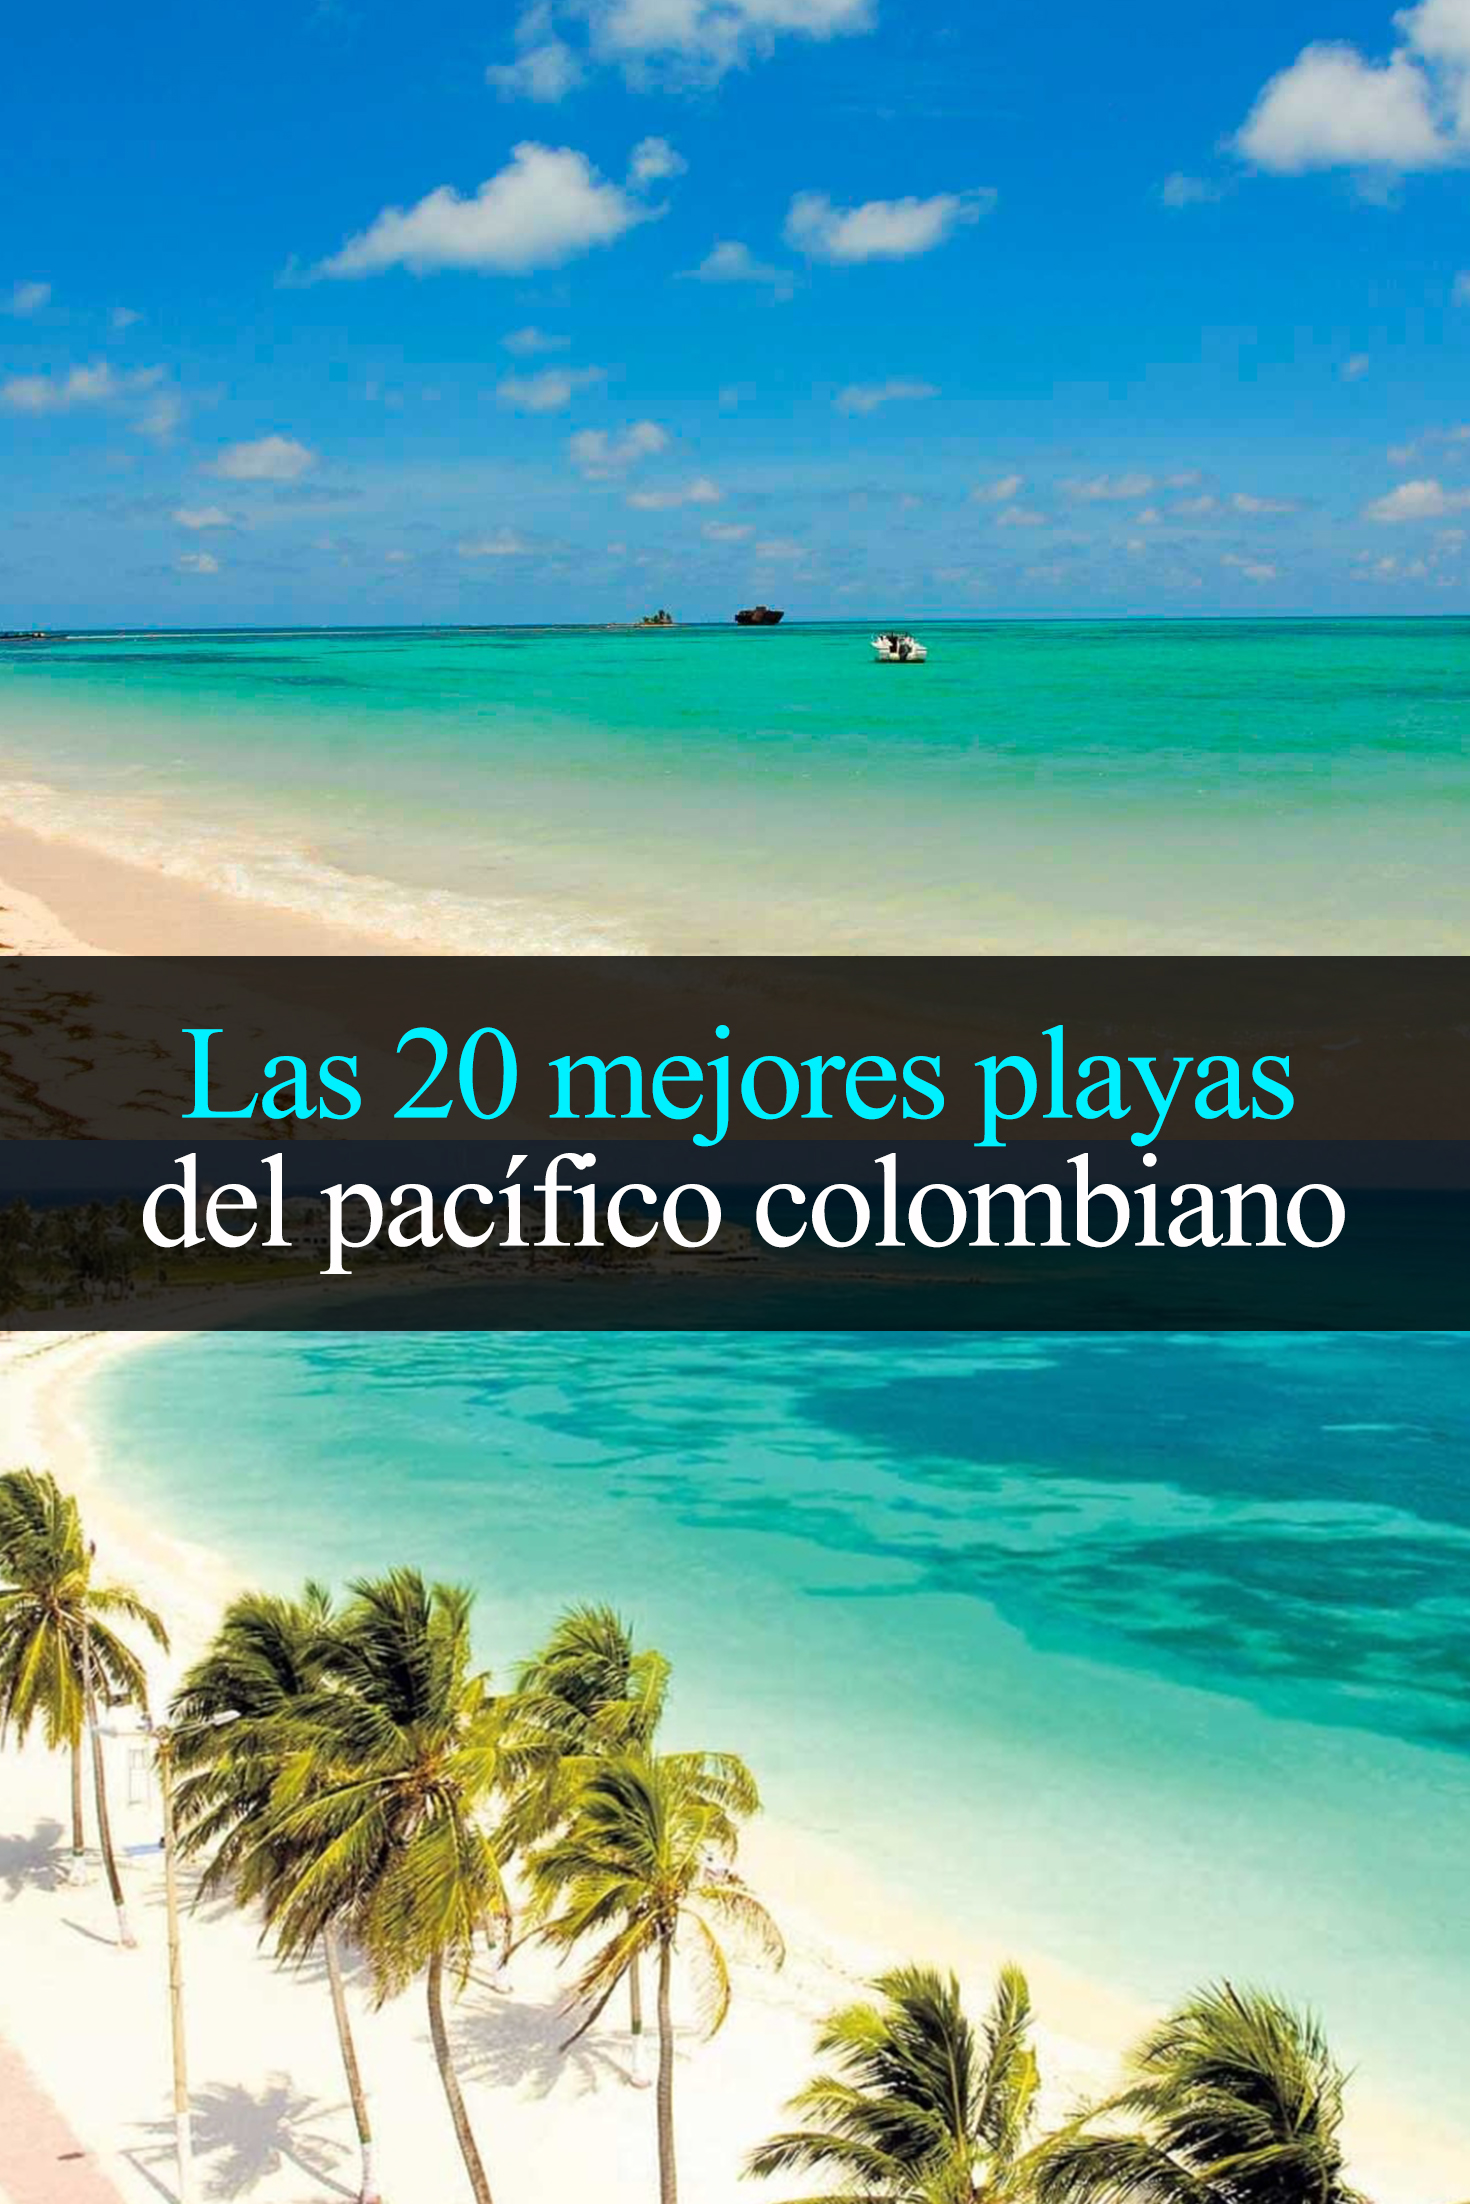 Las 20 mejores playas del pacífico colombiano que debes visitar